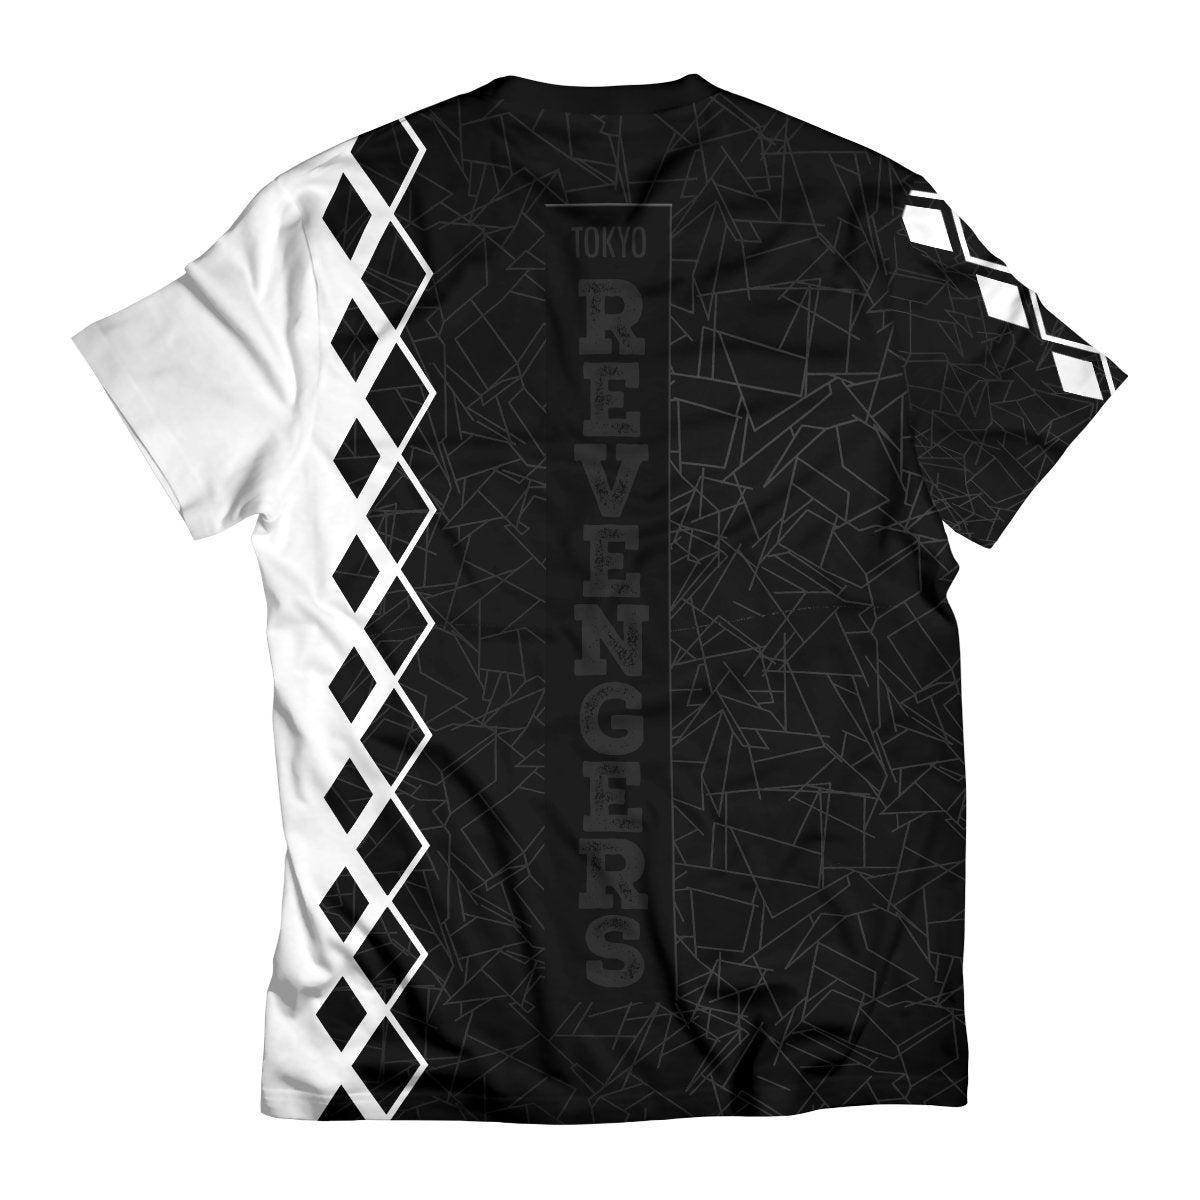 Fandomaniax - Draken Mikey Unisex T-Shirt